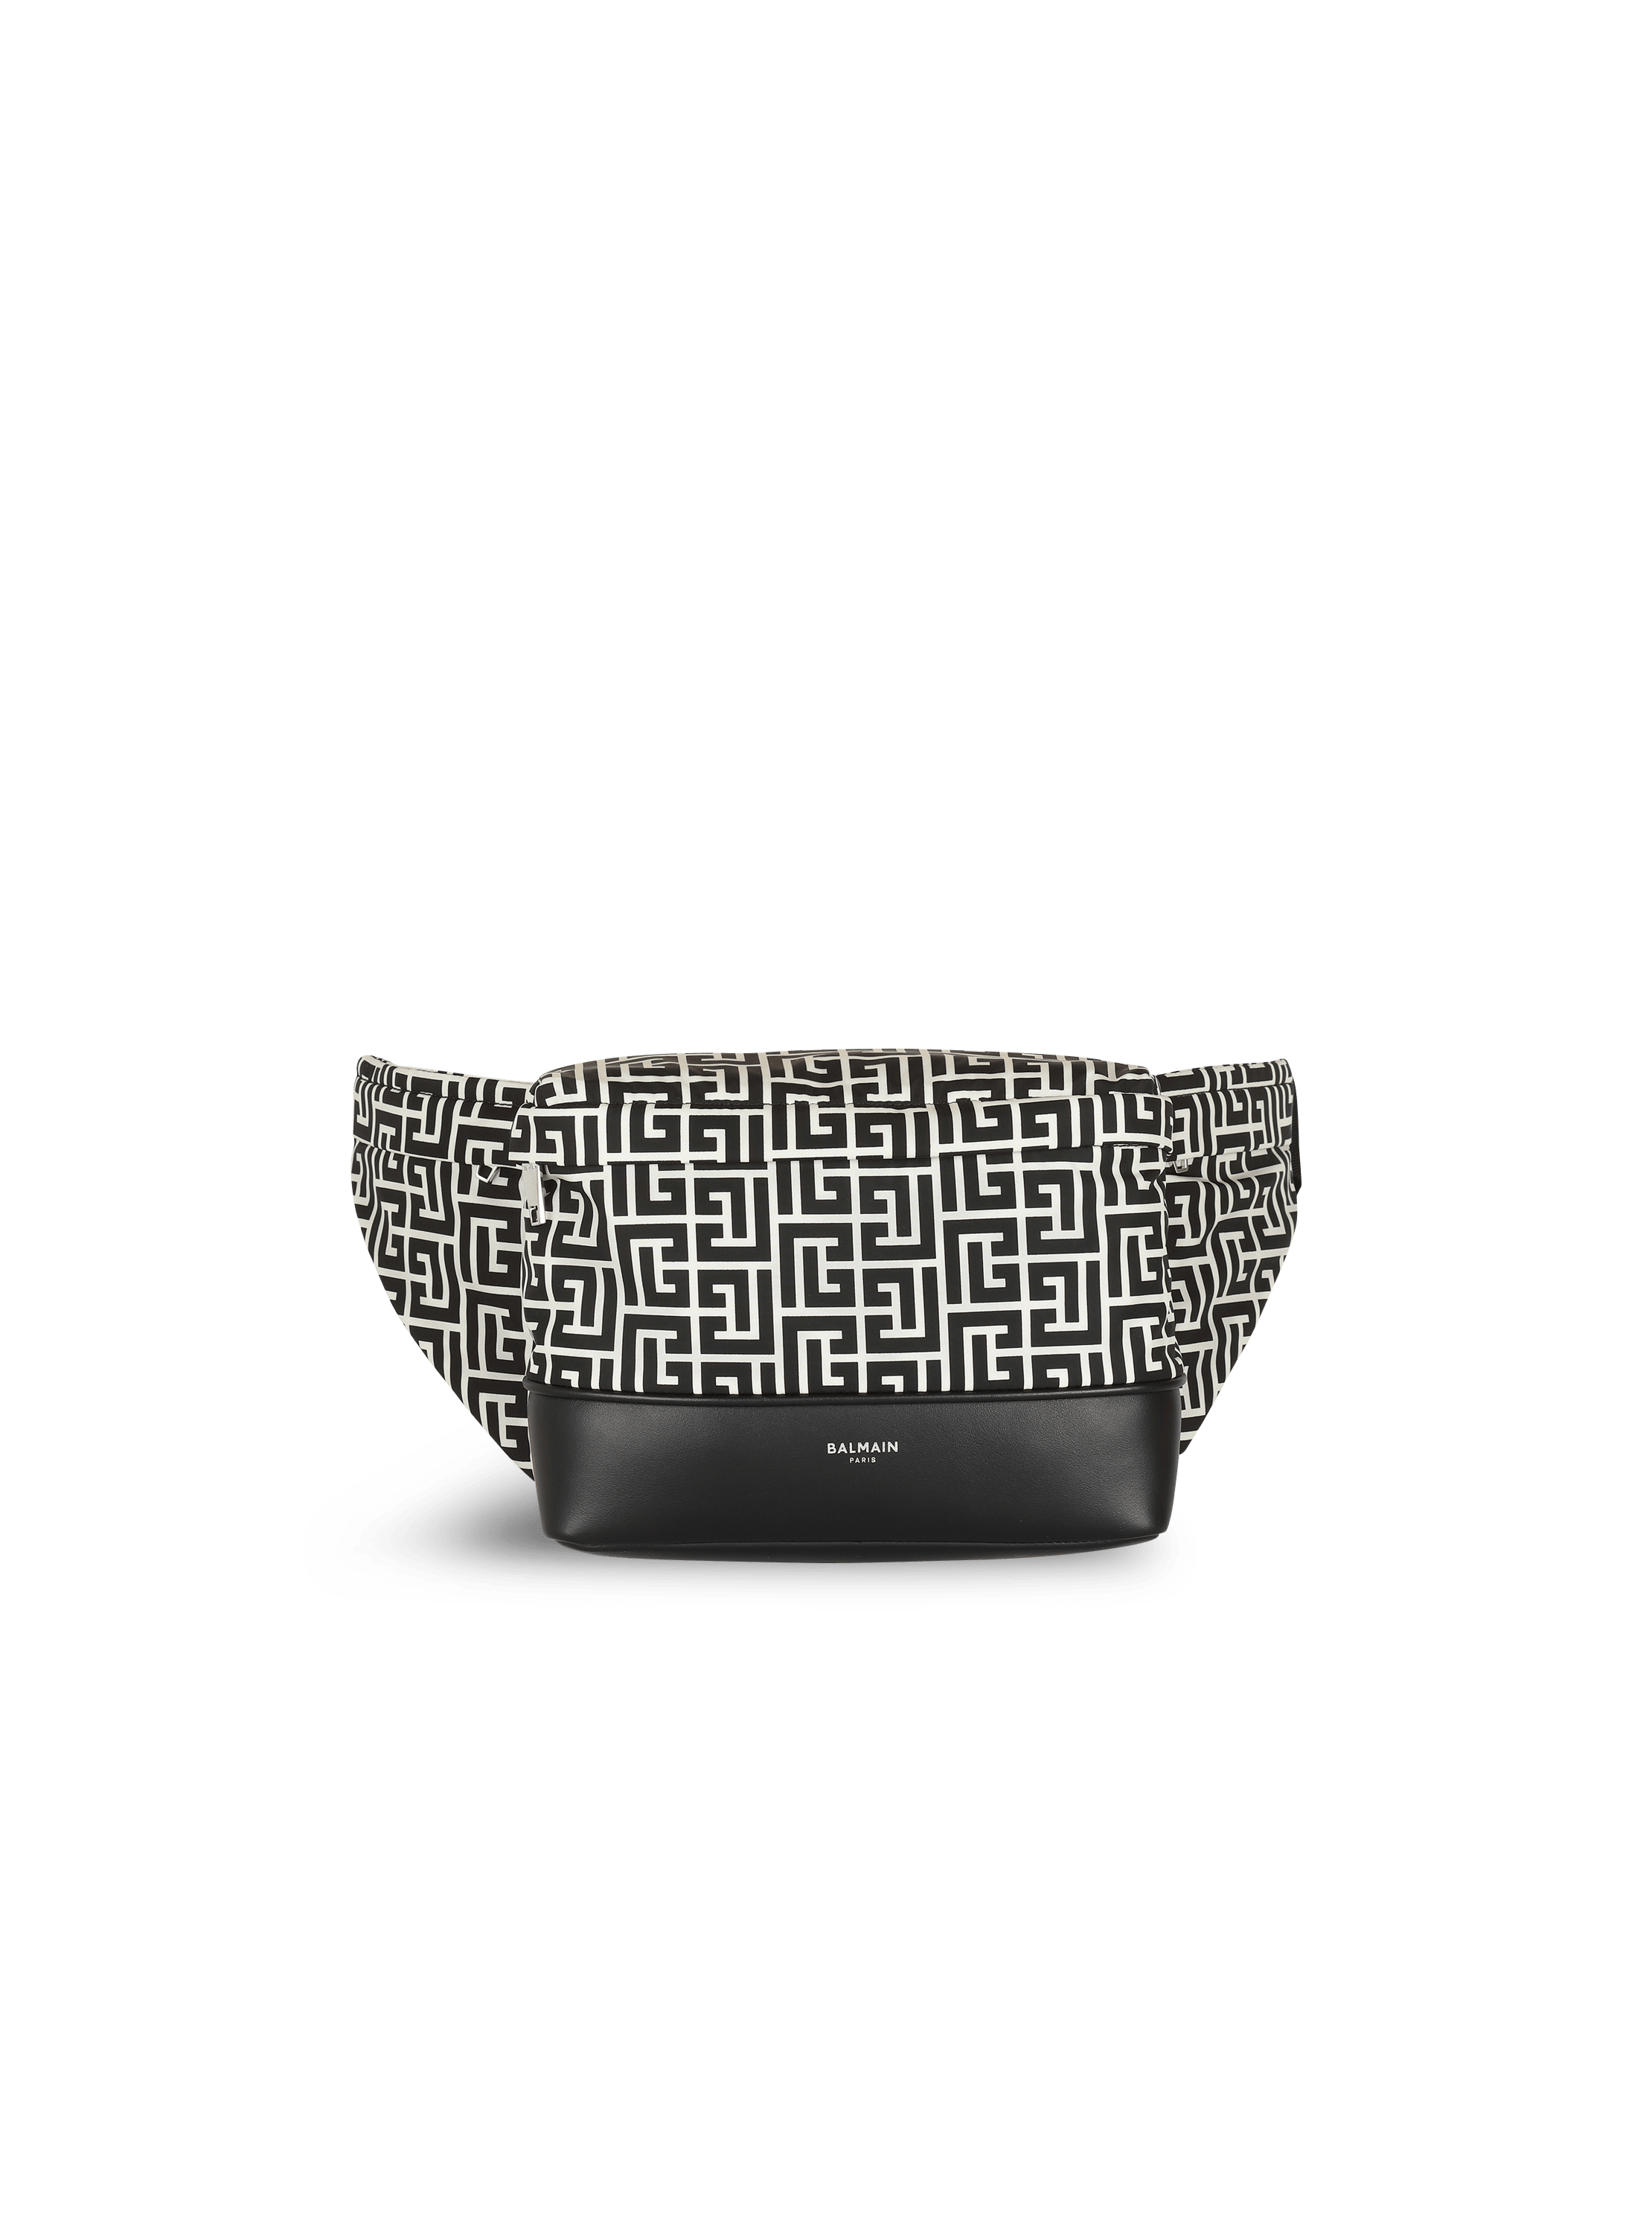 T&L Nylon Bum Bag – The Monogram Shoppe